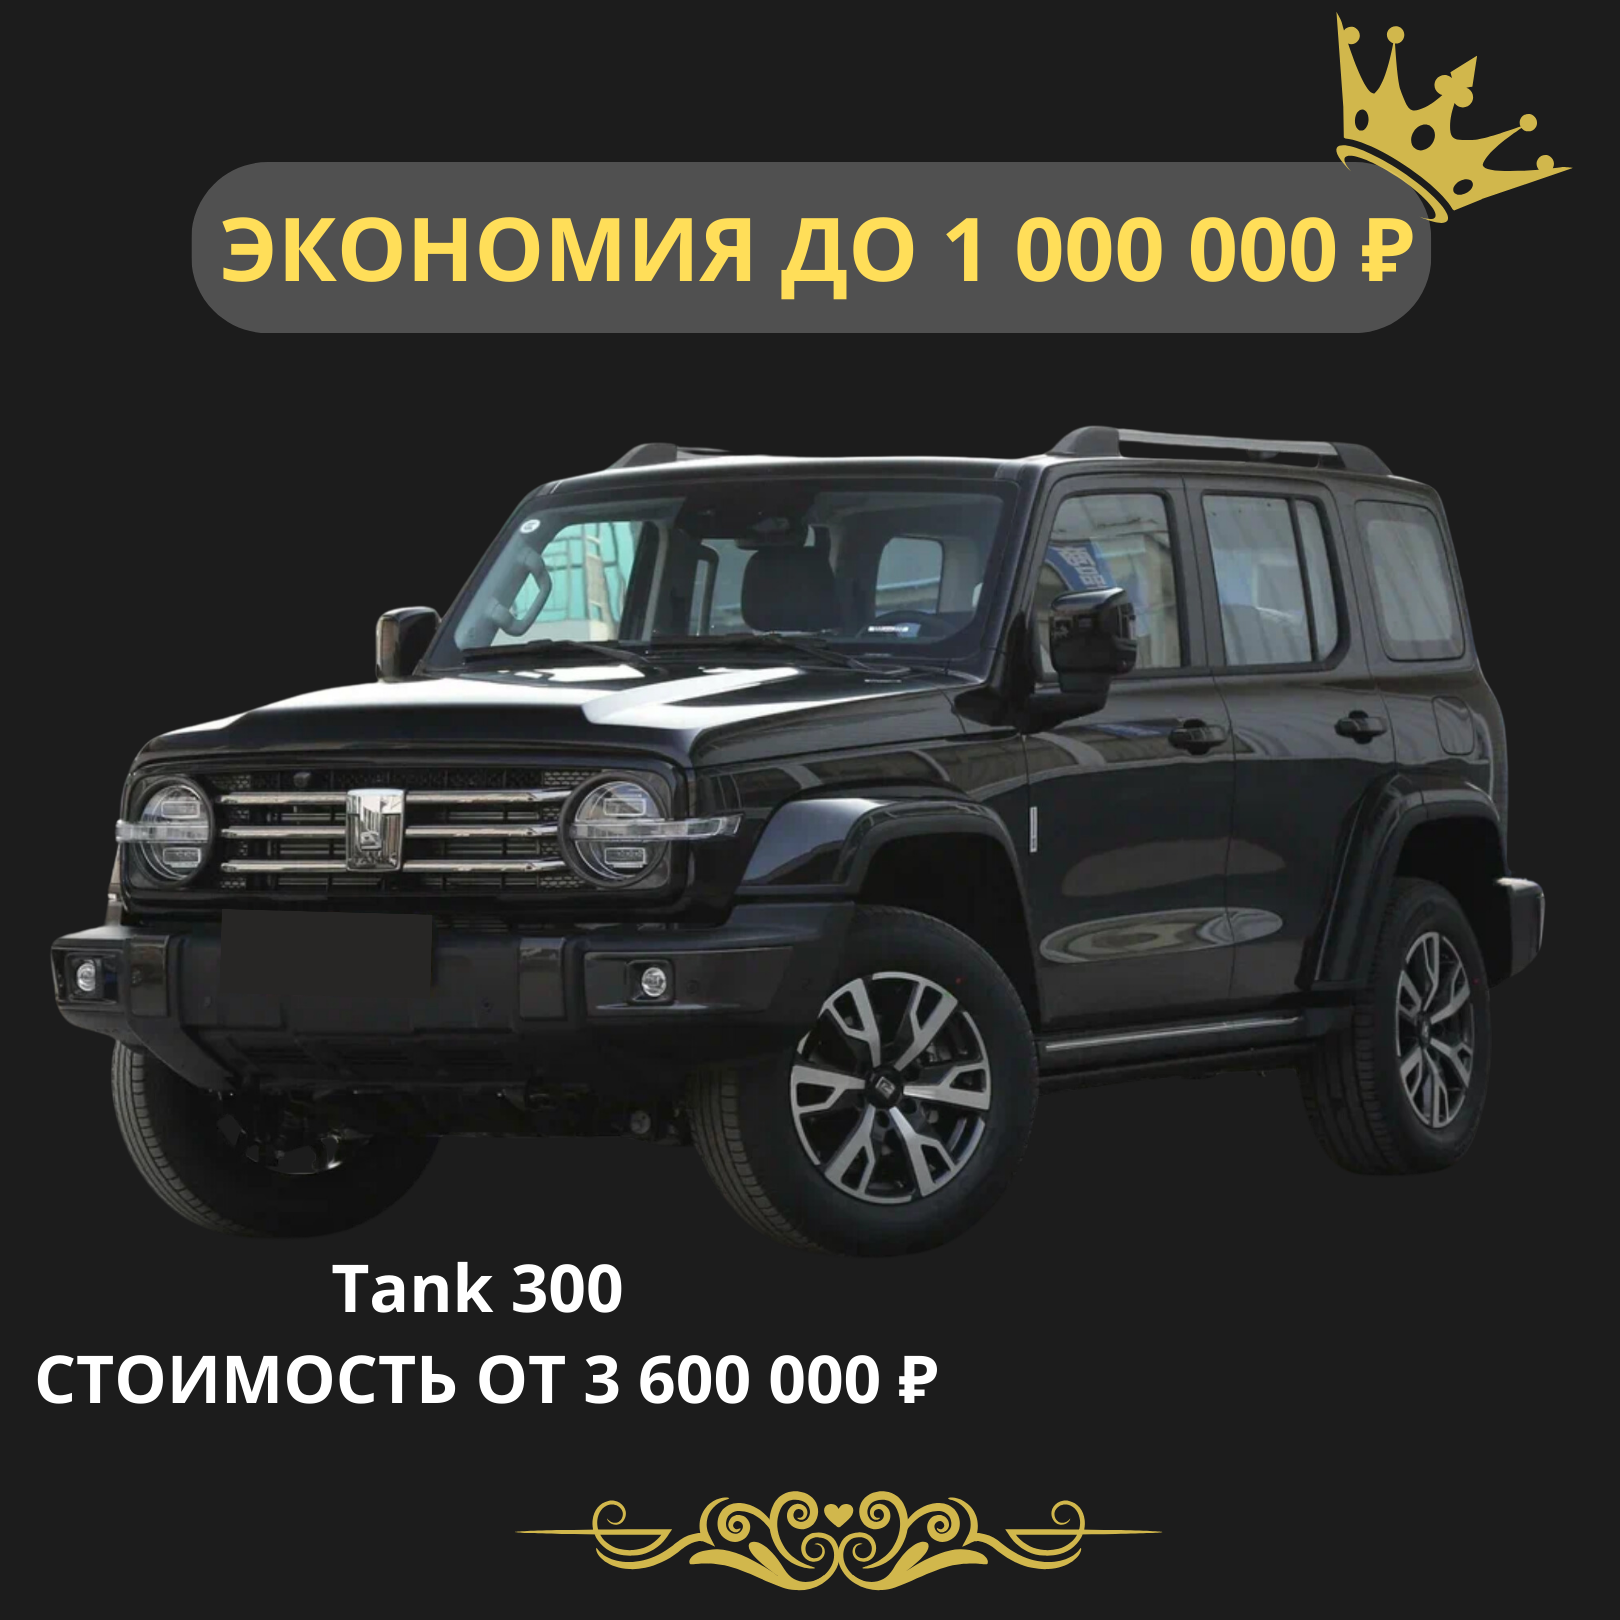 Tank 300. Стоимость от 3 600 000 рублей